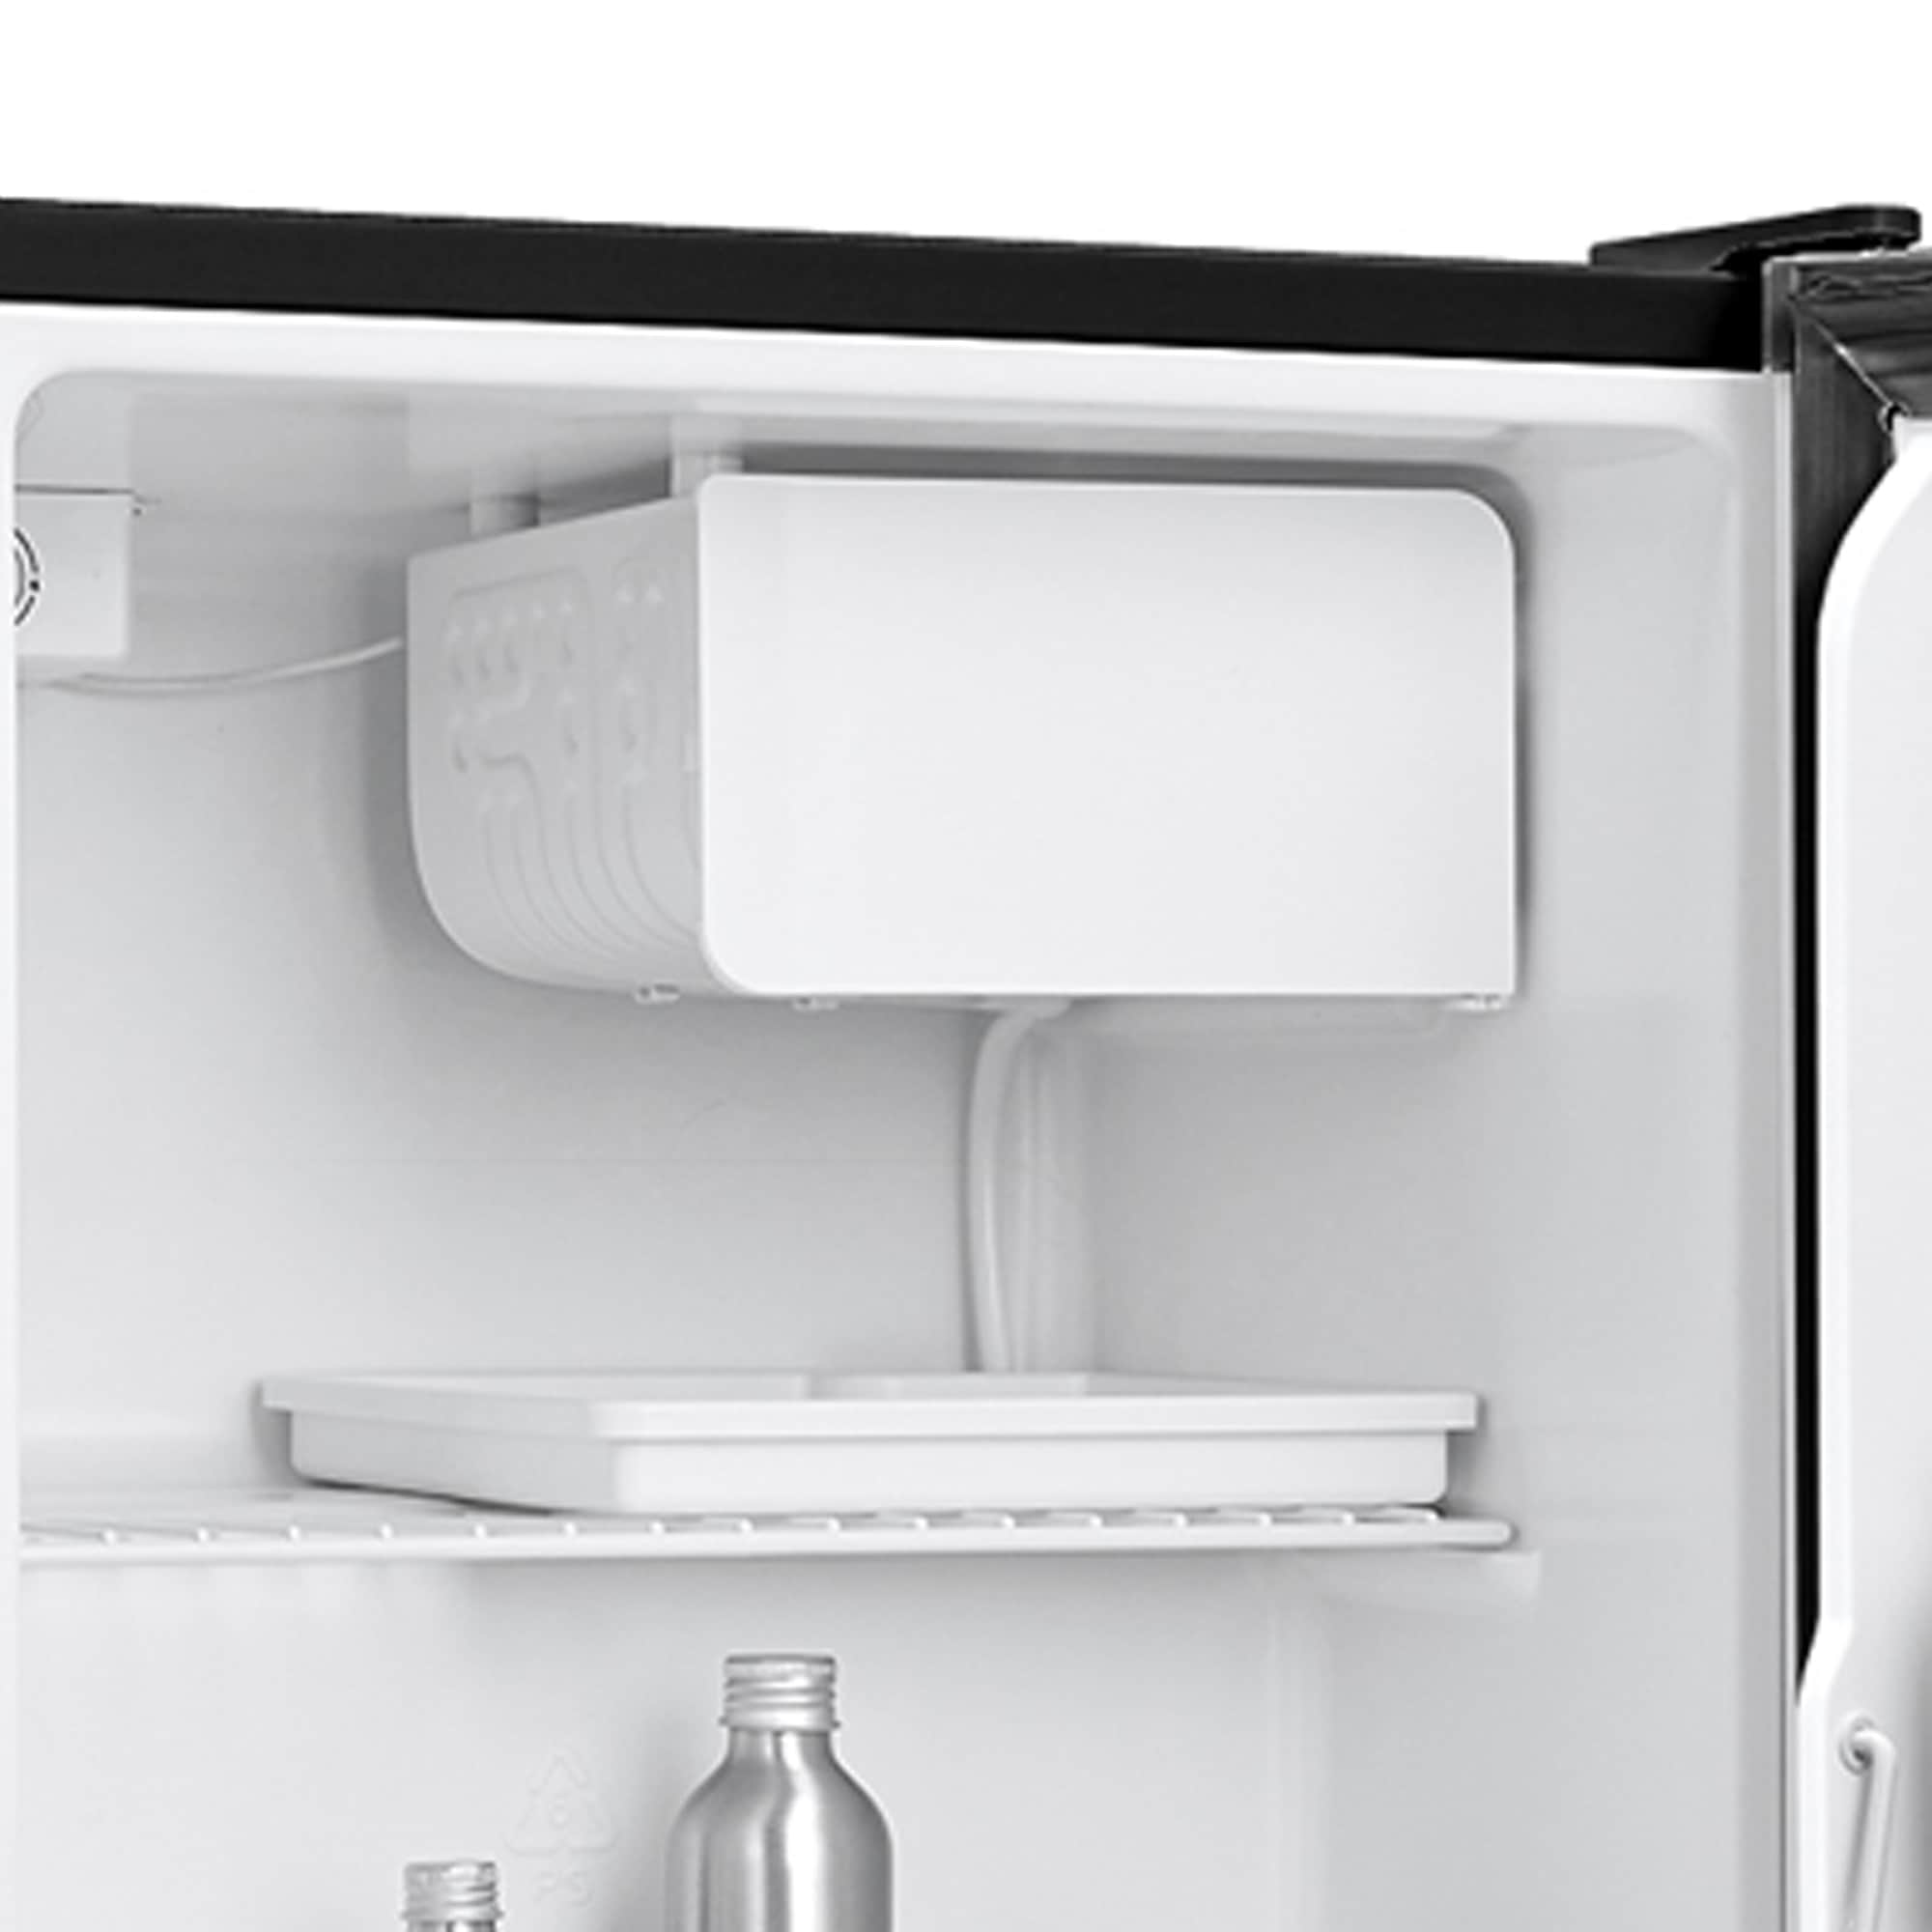 1.7 Cu ft No Freezer Mini Fridge Black Compact Refrigerators Home